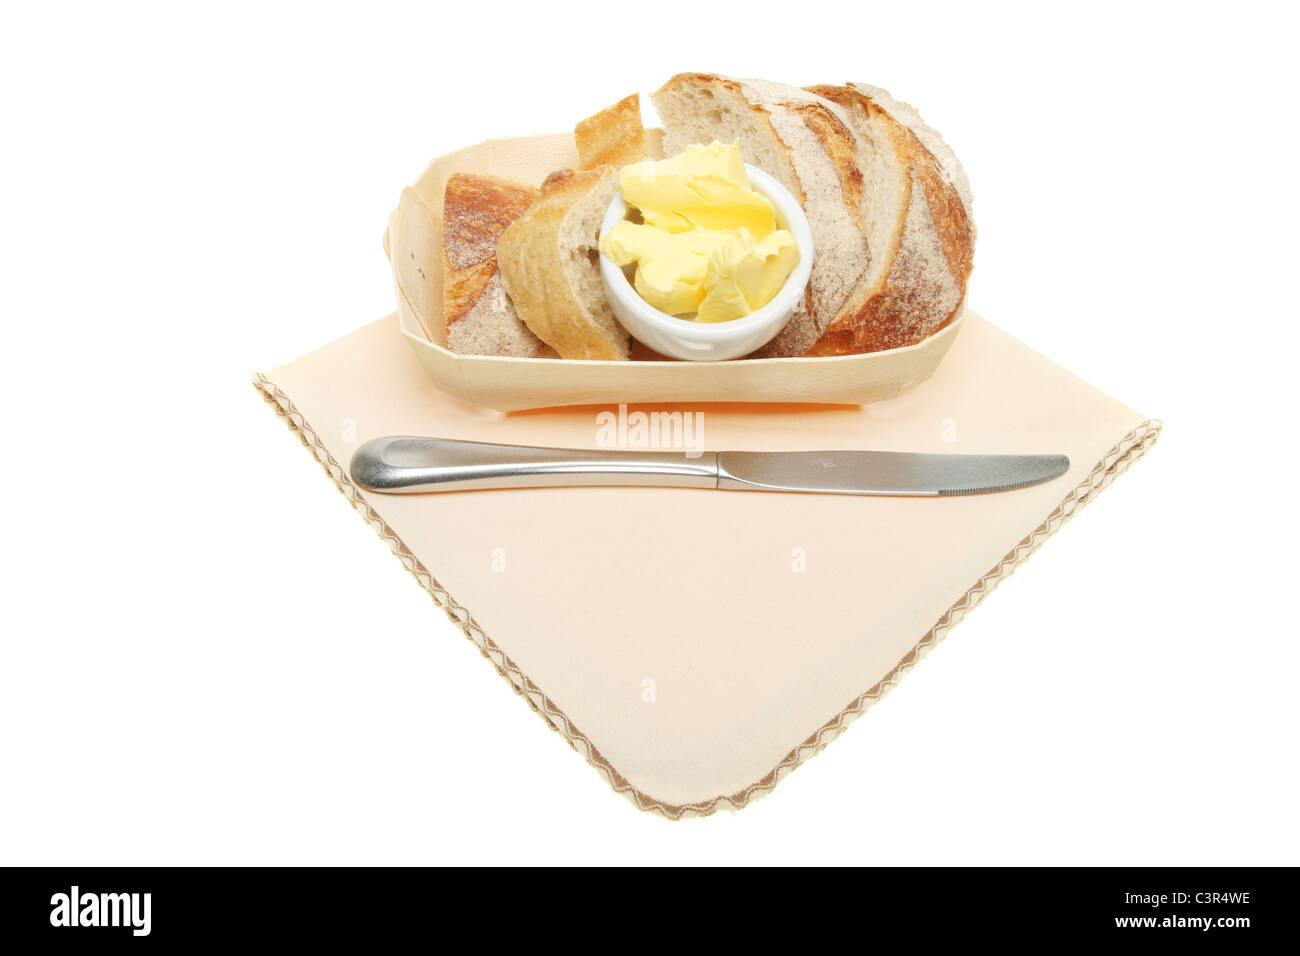 Knuspriges Brot und Butter in einem Holz Korb mit einem Messer auf eine serviette Stockfoto